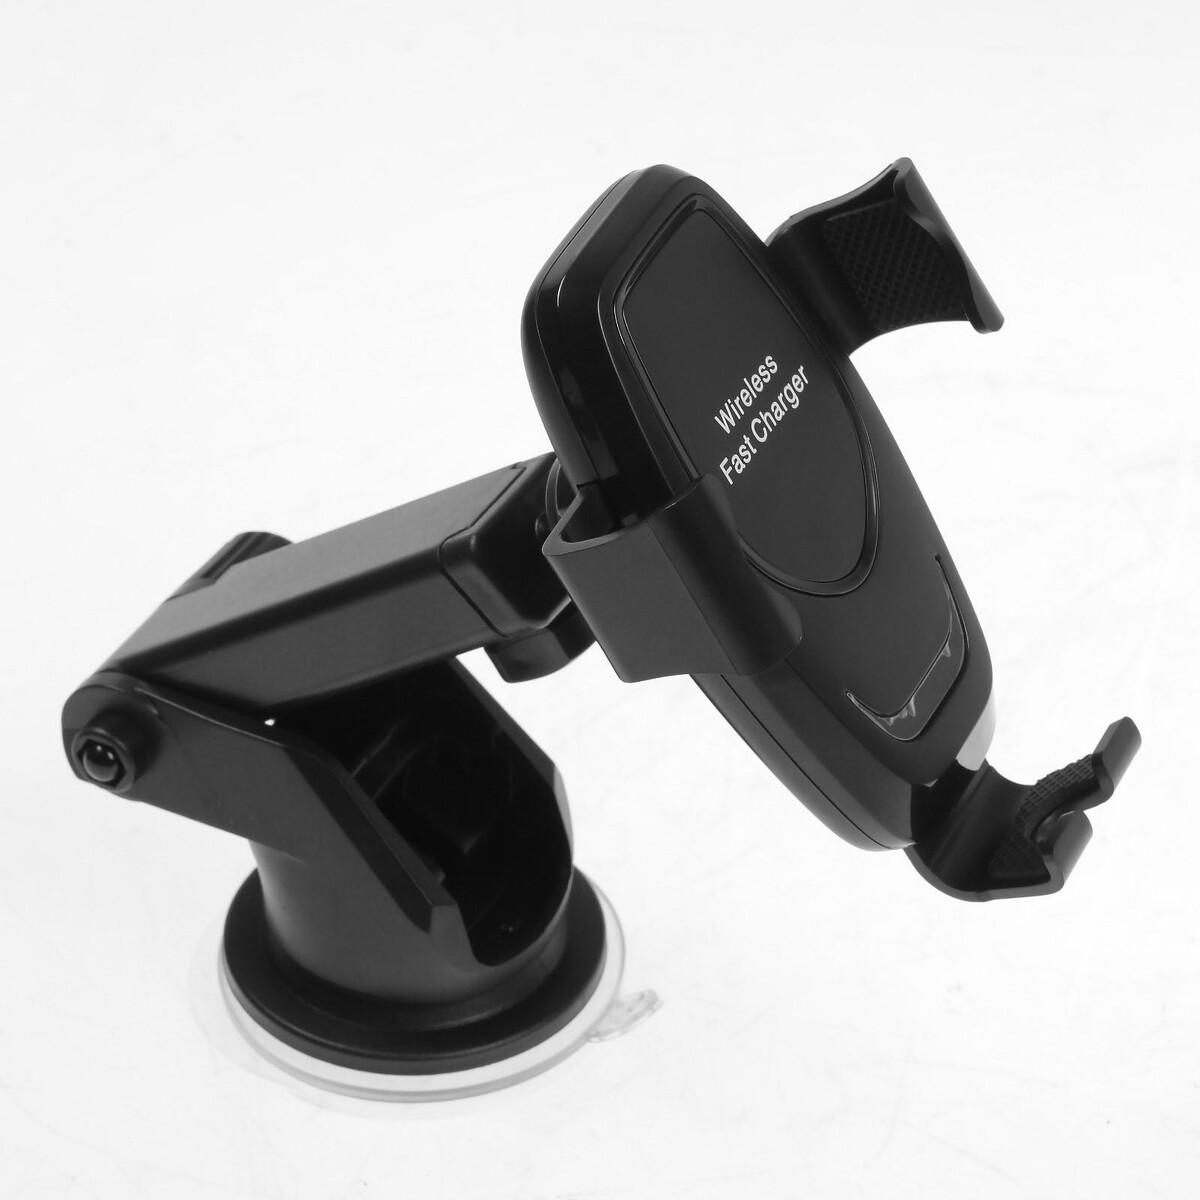 Держатель телефона с беспроводной зарядкой, самозажимной захват 6-9.5 см, черный amg725w массажер для ног беспроводной gezatone